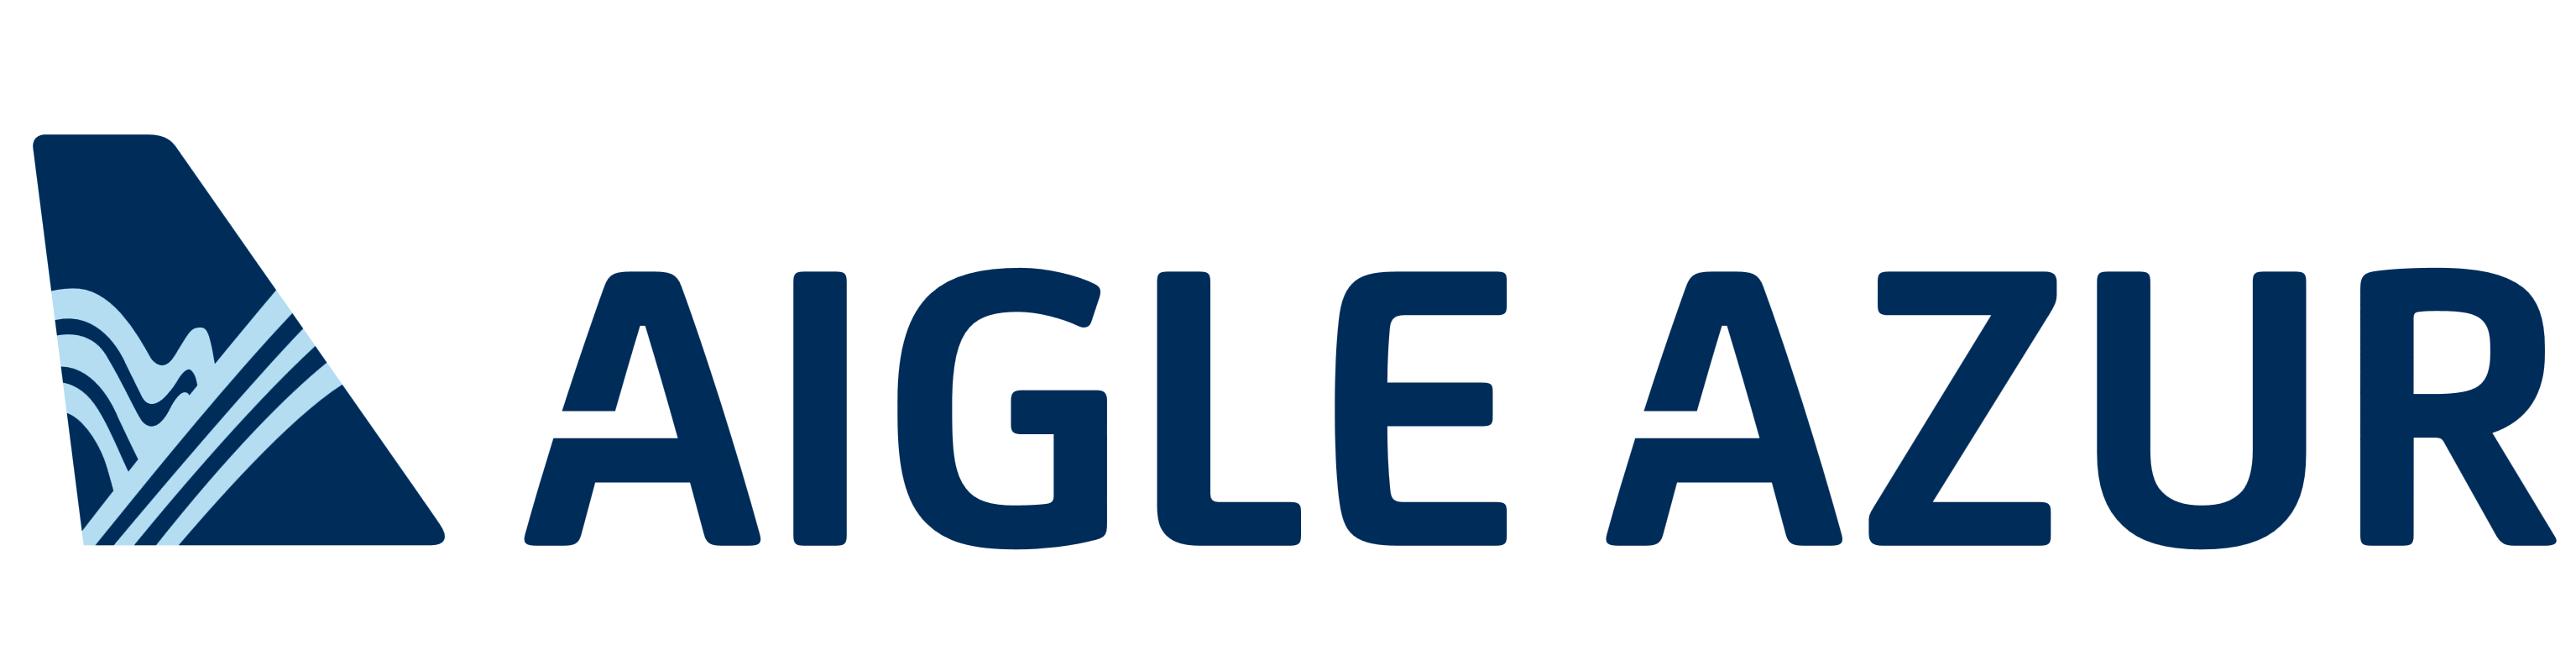 Aigle Azur logo, logotype